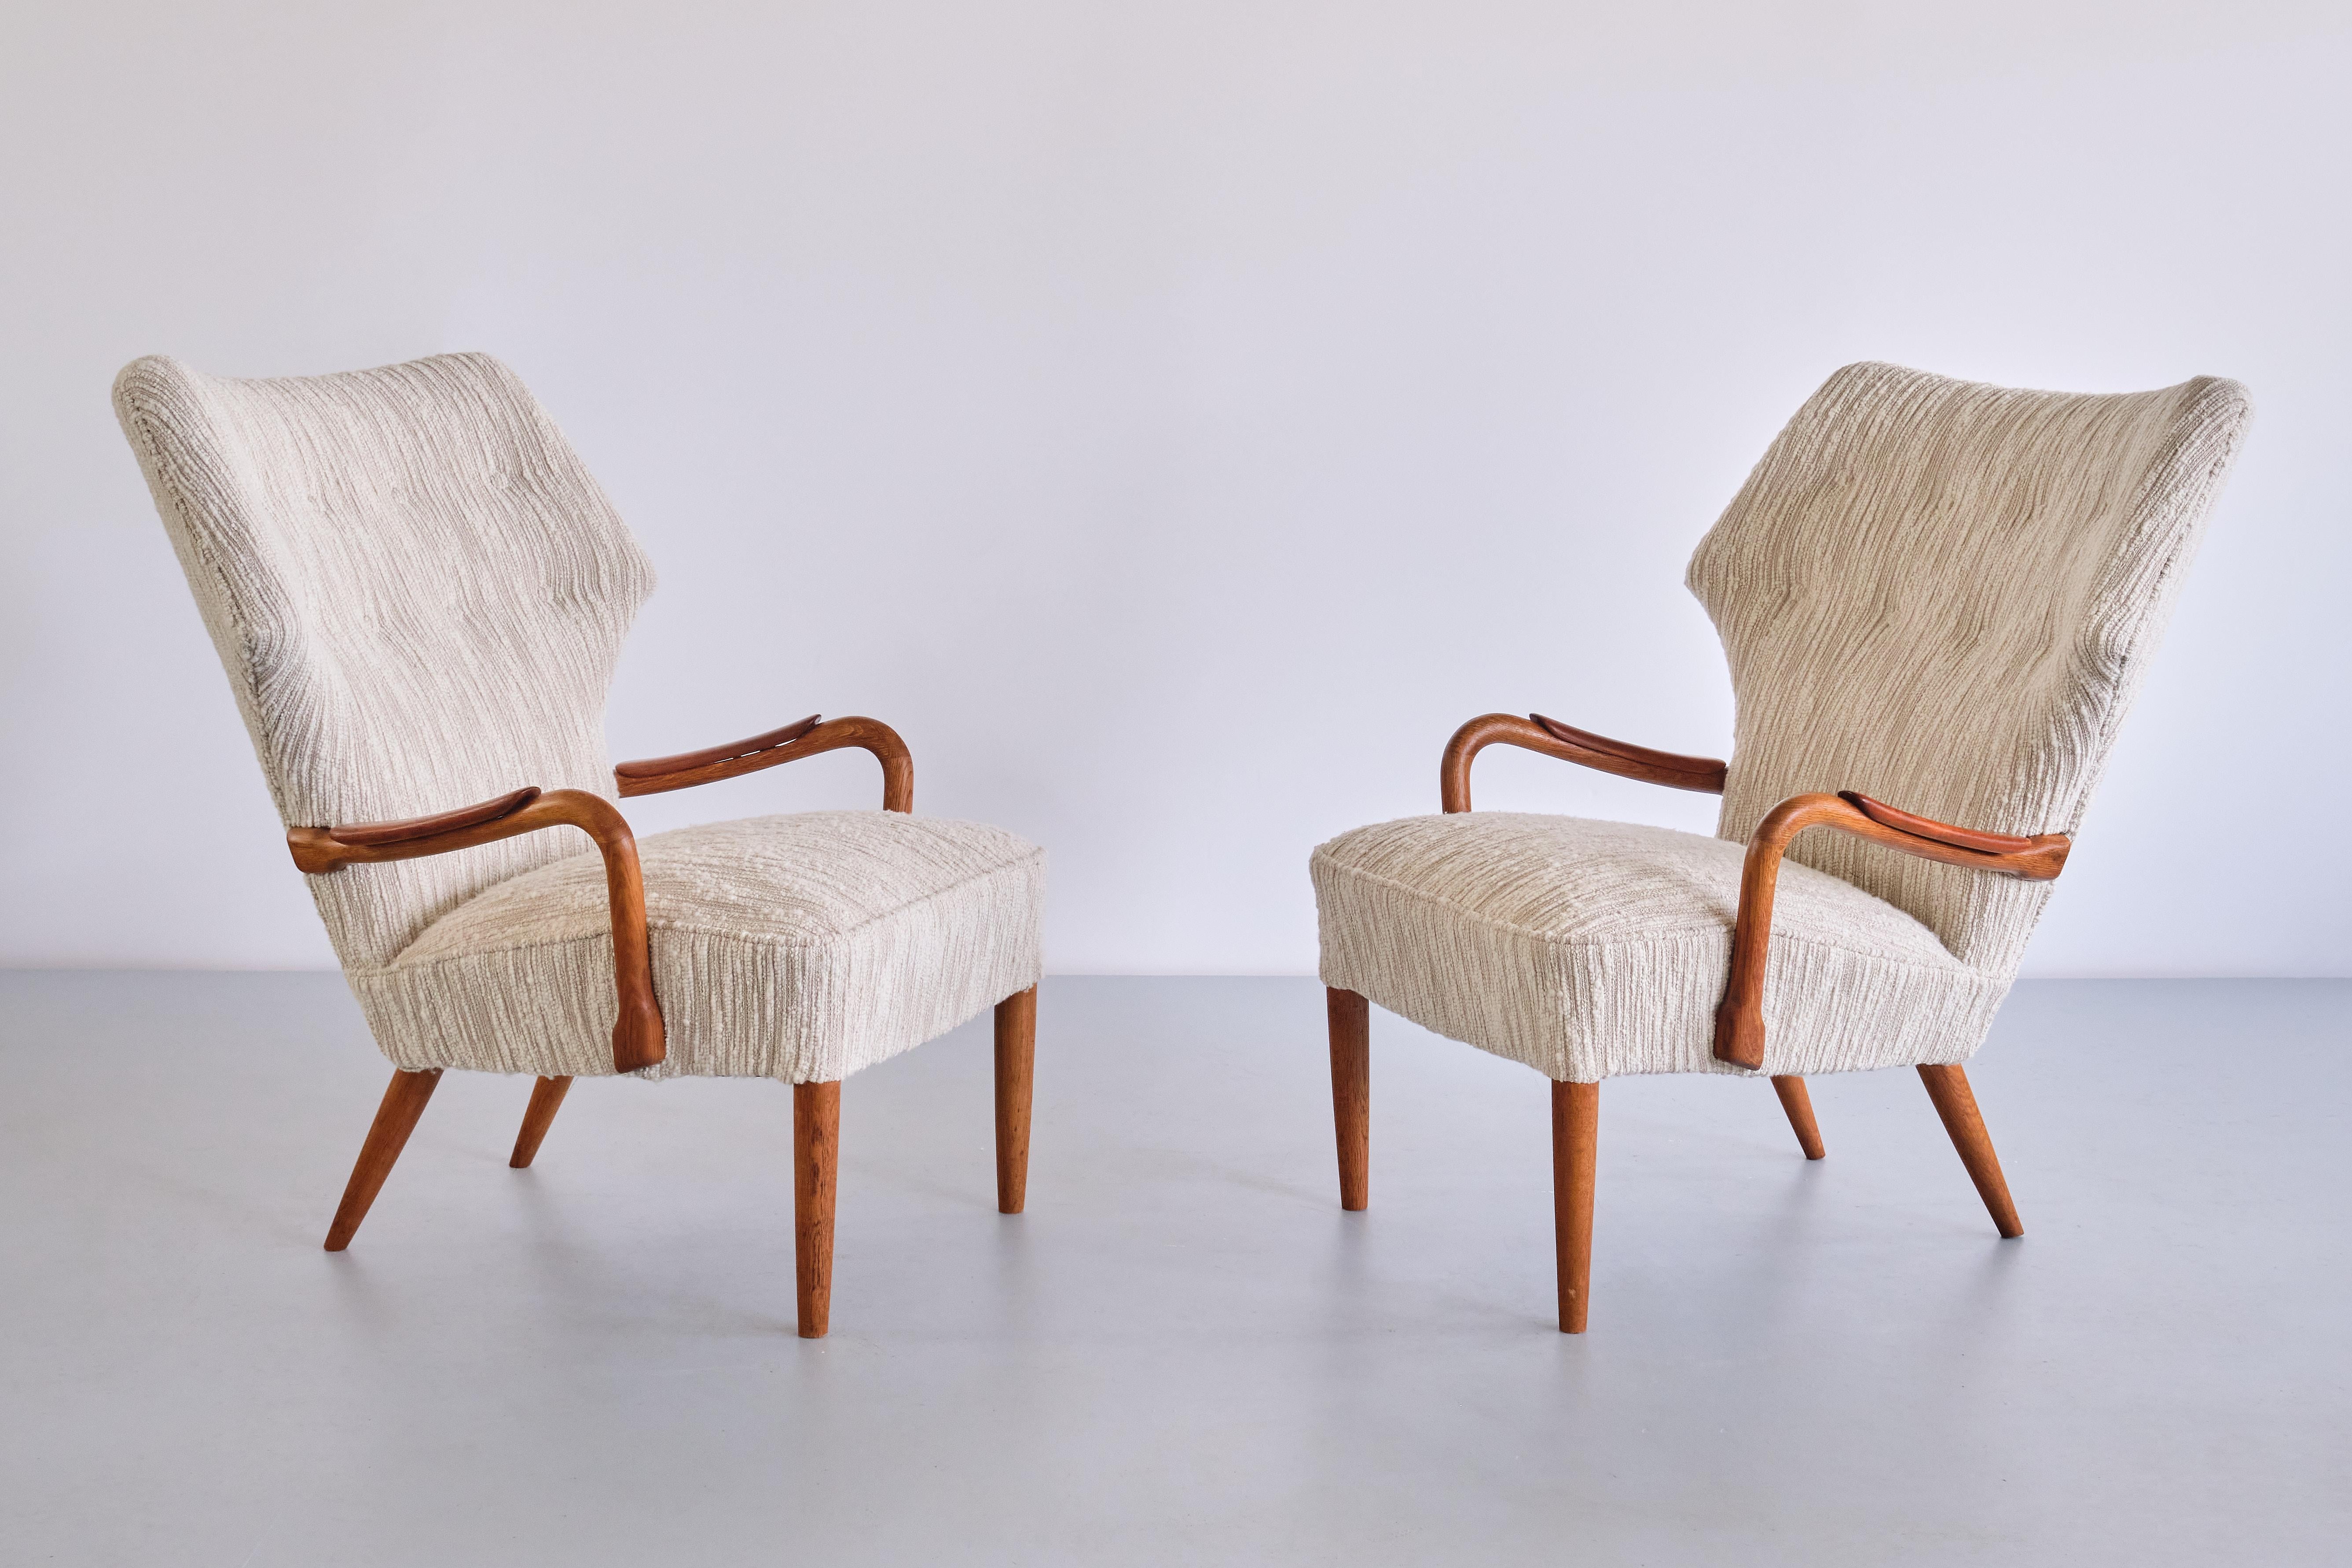 Ce rare ensemble composé de deux fauteuils et d'un tabouret assorti a été produit par un ébéniste danois à Roskilde au milieu des années 1950.
Le design des fauteuils est marqué par le dossier légèrement incliné, en forme d'aile, avec des détails de